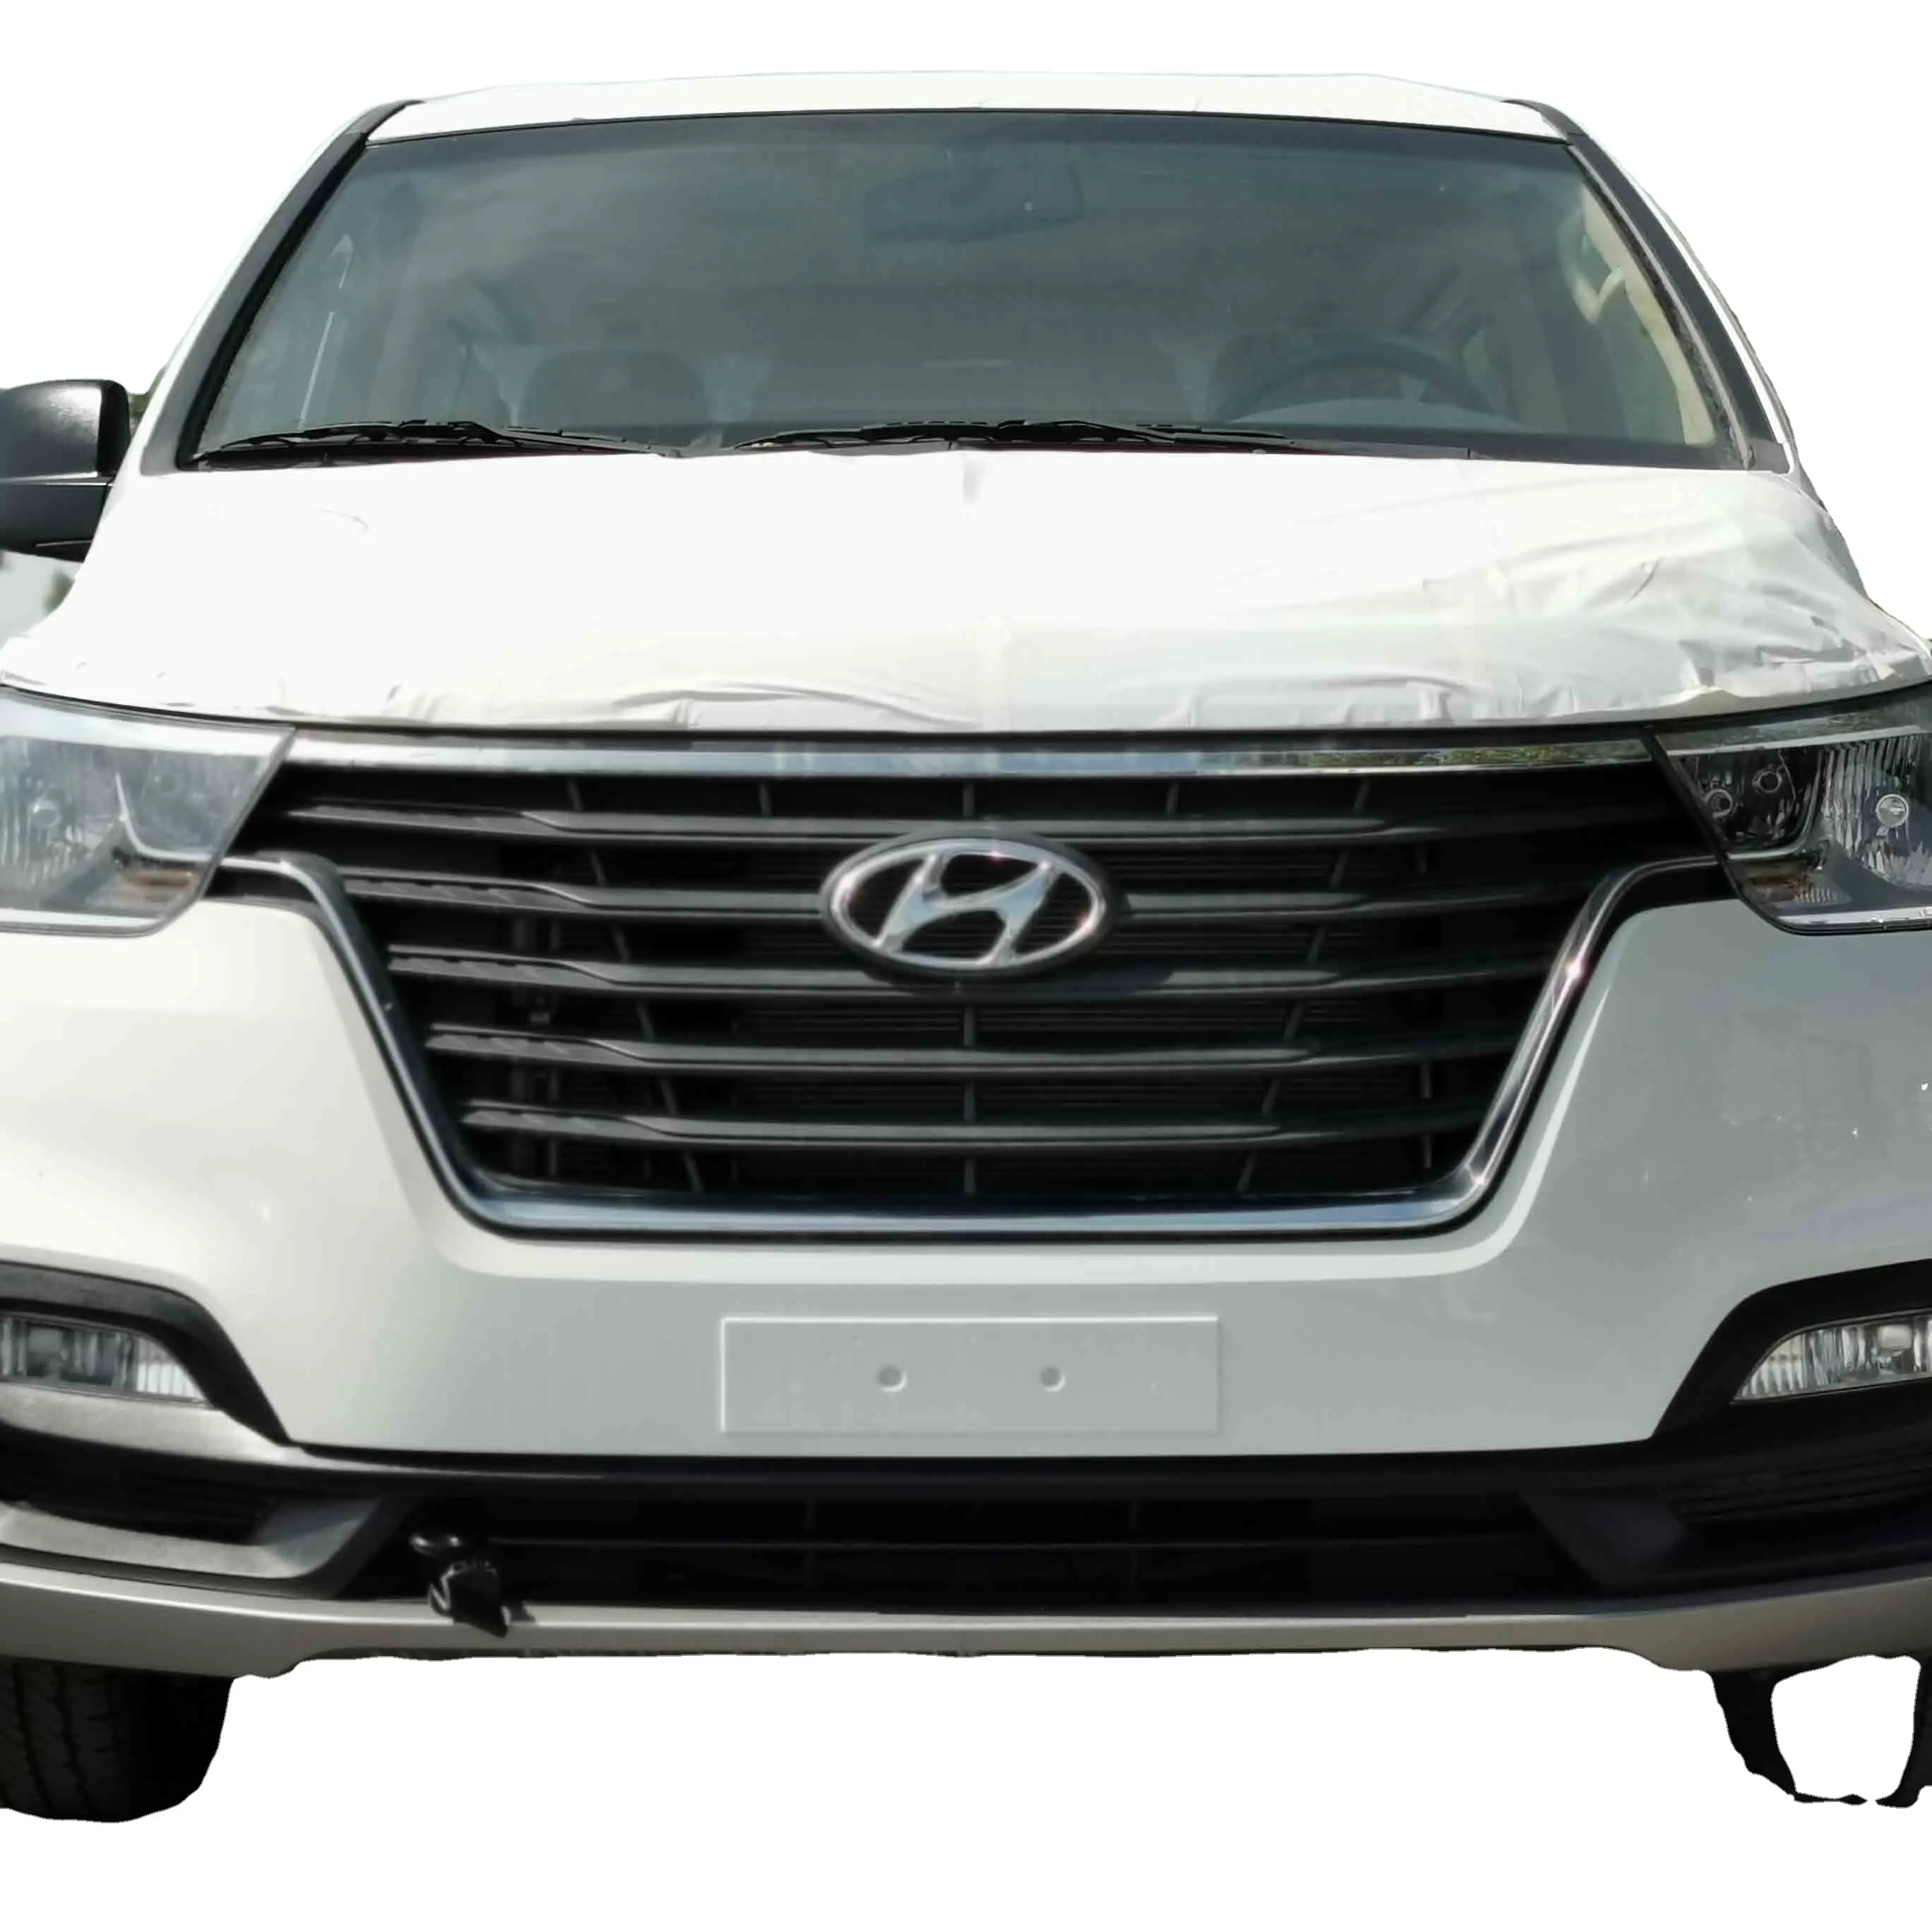 H Y U N D A I H1 2020 voitures d'occasion du japon allemagne à vendre Offre Spéciale Type de moteur essence direction kilométrage gauche Condition